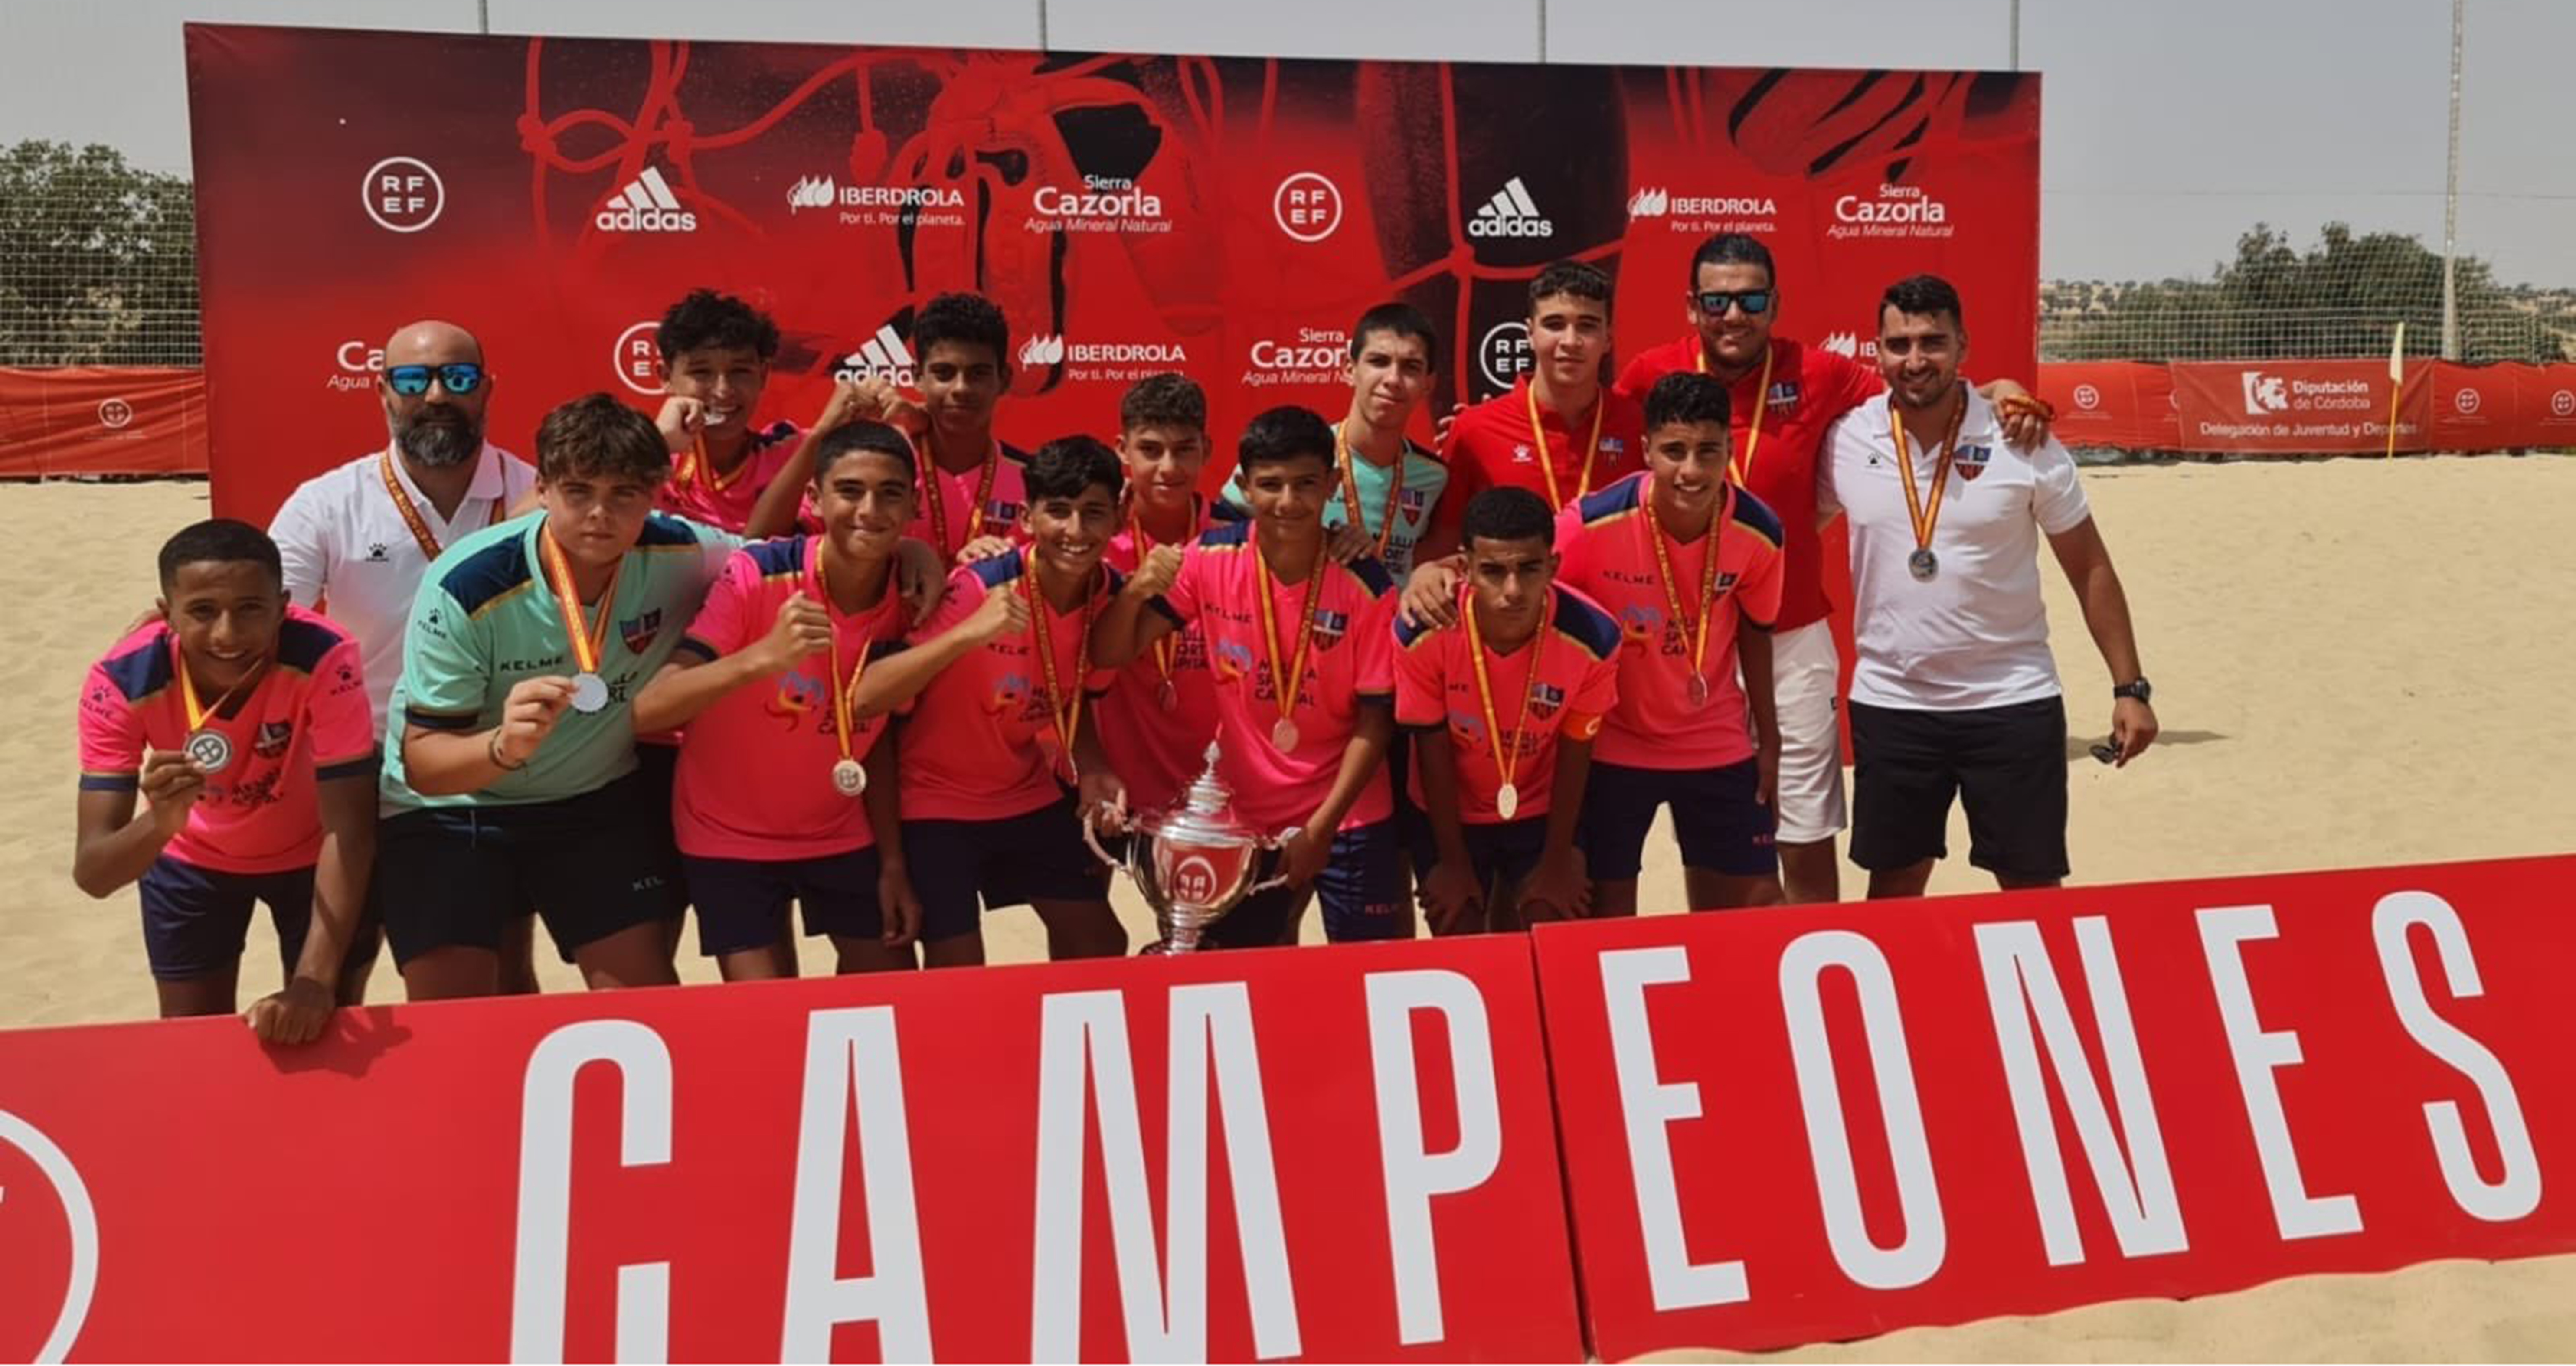 La escuadra infantil del CF Rusadir ha puesto broche final a una gran temporada con el subcampeonato de España de fútbol playa.